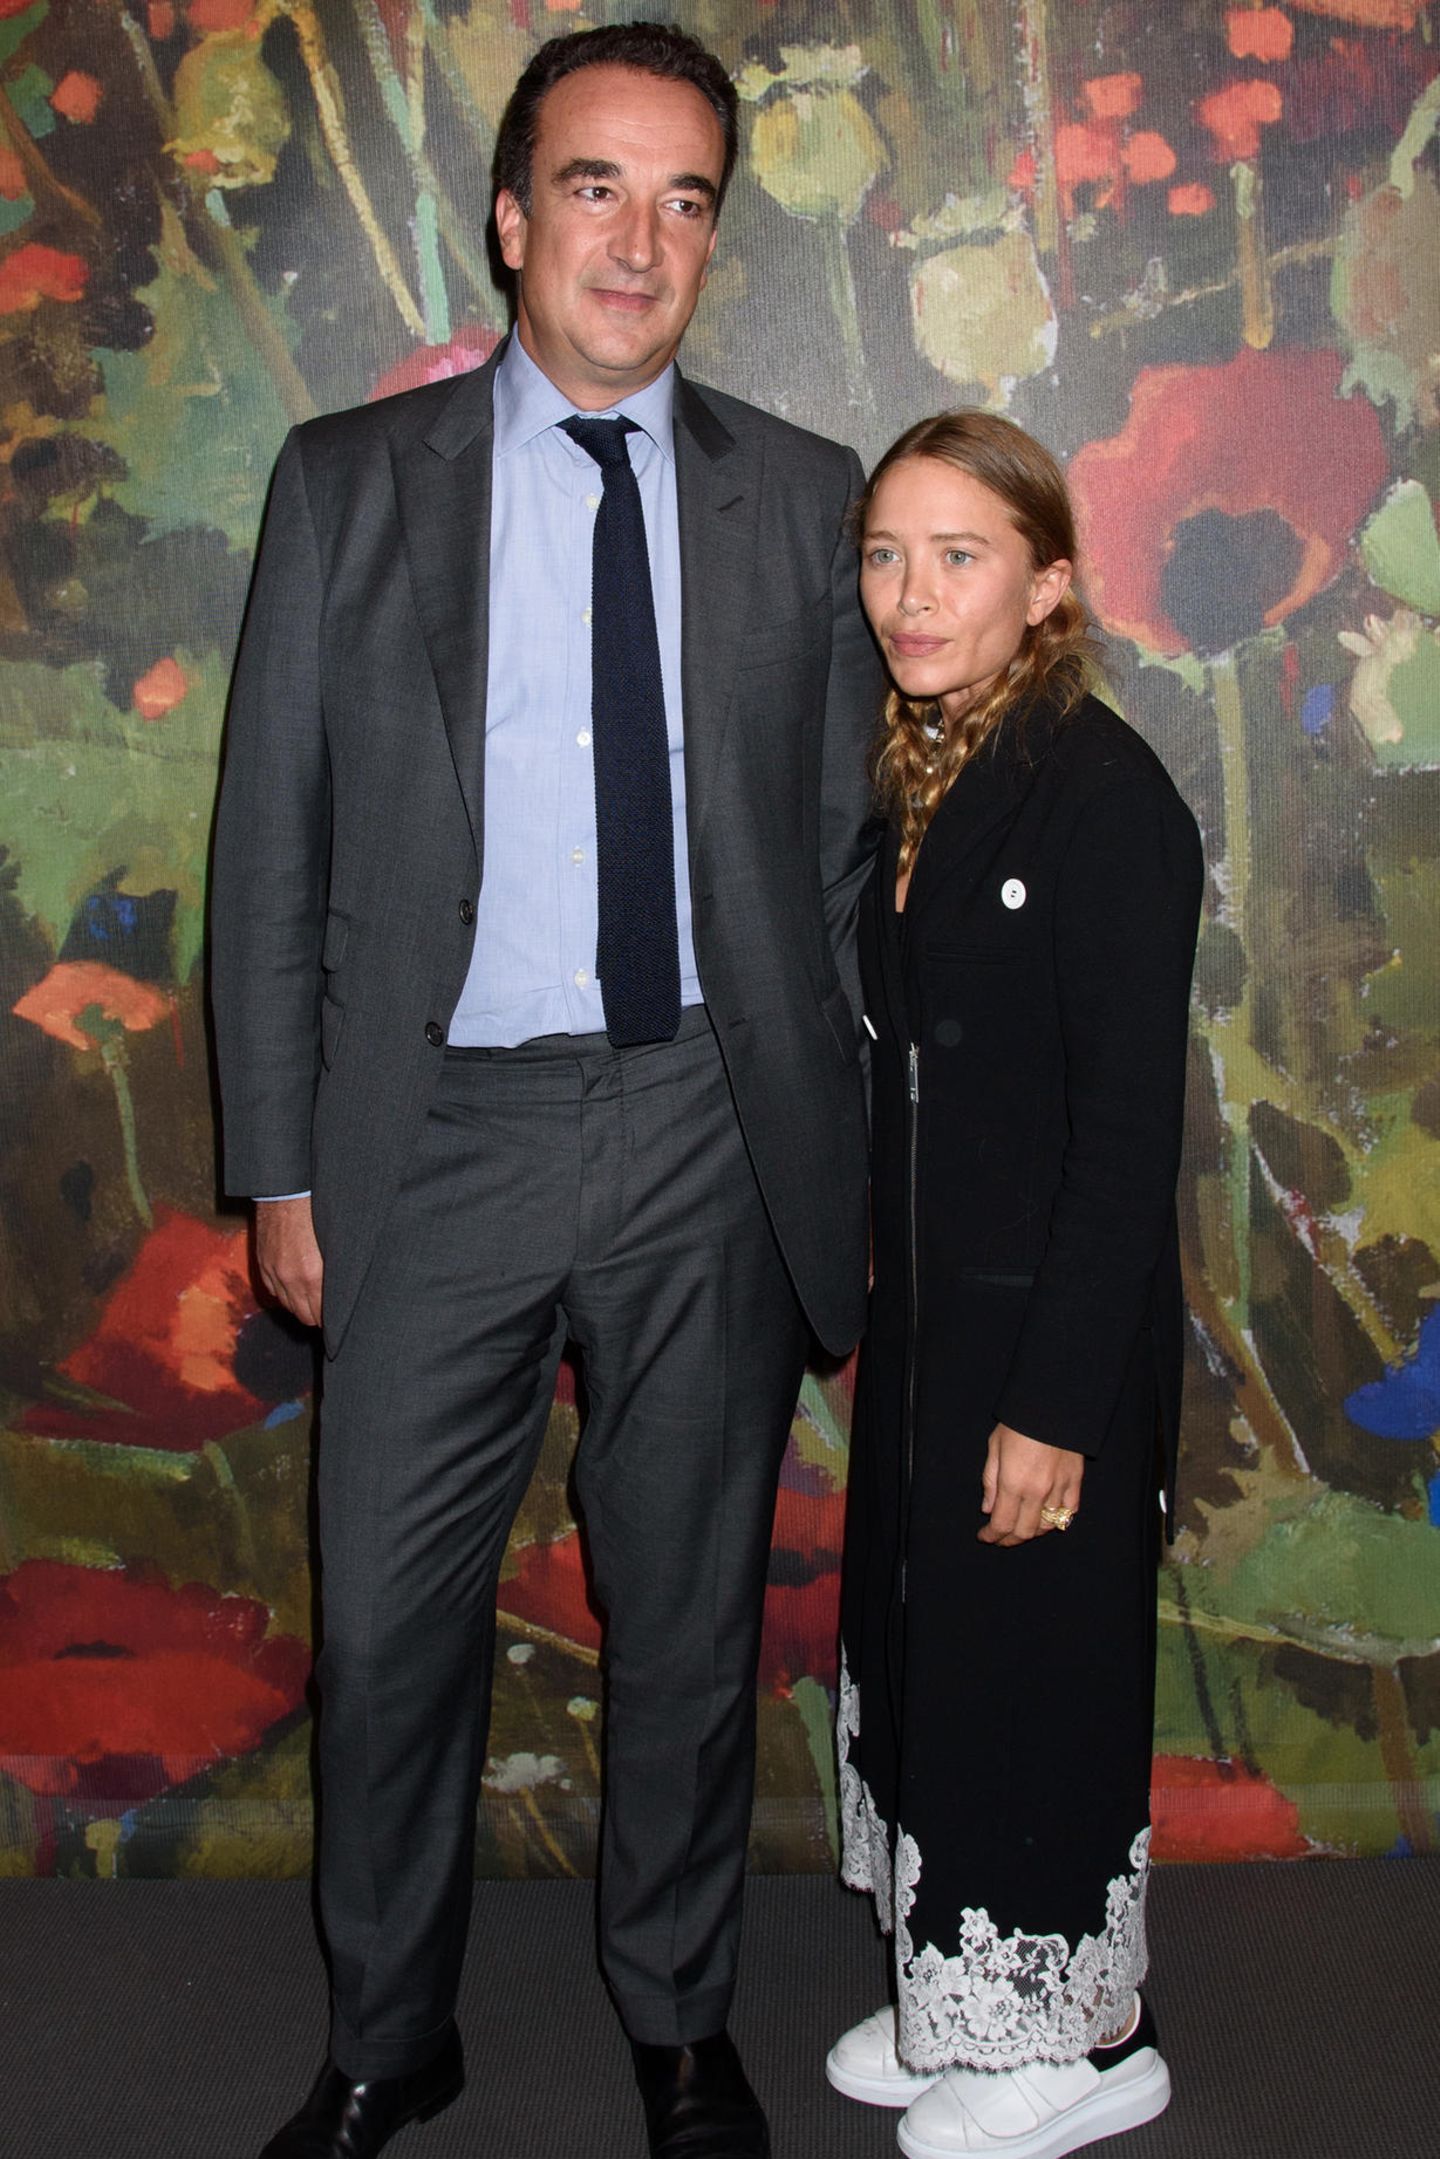 Es ist eines dieser ungleichen Promi-Paare, die Fans zum Stirnrunzeln bringt: Olivier Sarkozy, der französische Prototyp eines Anzug tragenden Geschäftsmannes (er ist Bankier) und Bruder von Ex-Präsident Nicolas Sarkozy und seine Ehefrau, die neben ihm verschwindend winzige Mary-Kate Olsen, eine der berühmten Olsen-Twins...